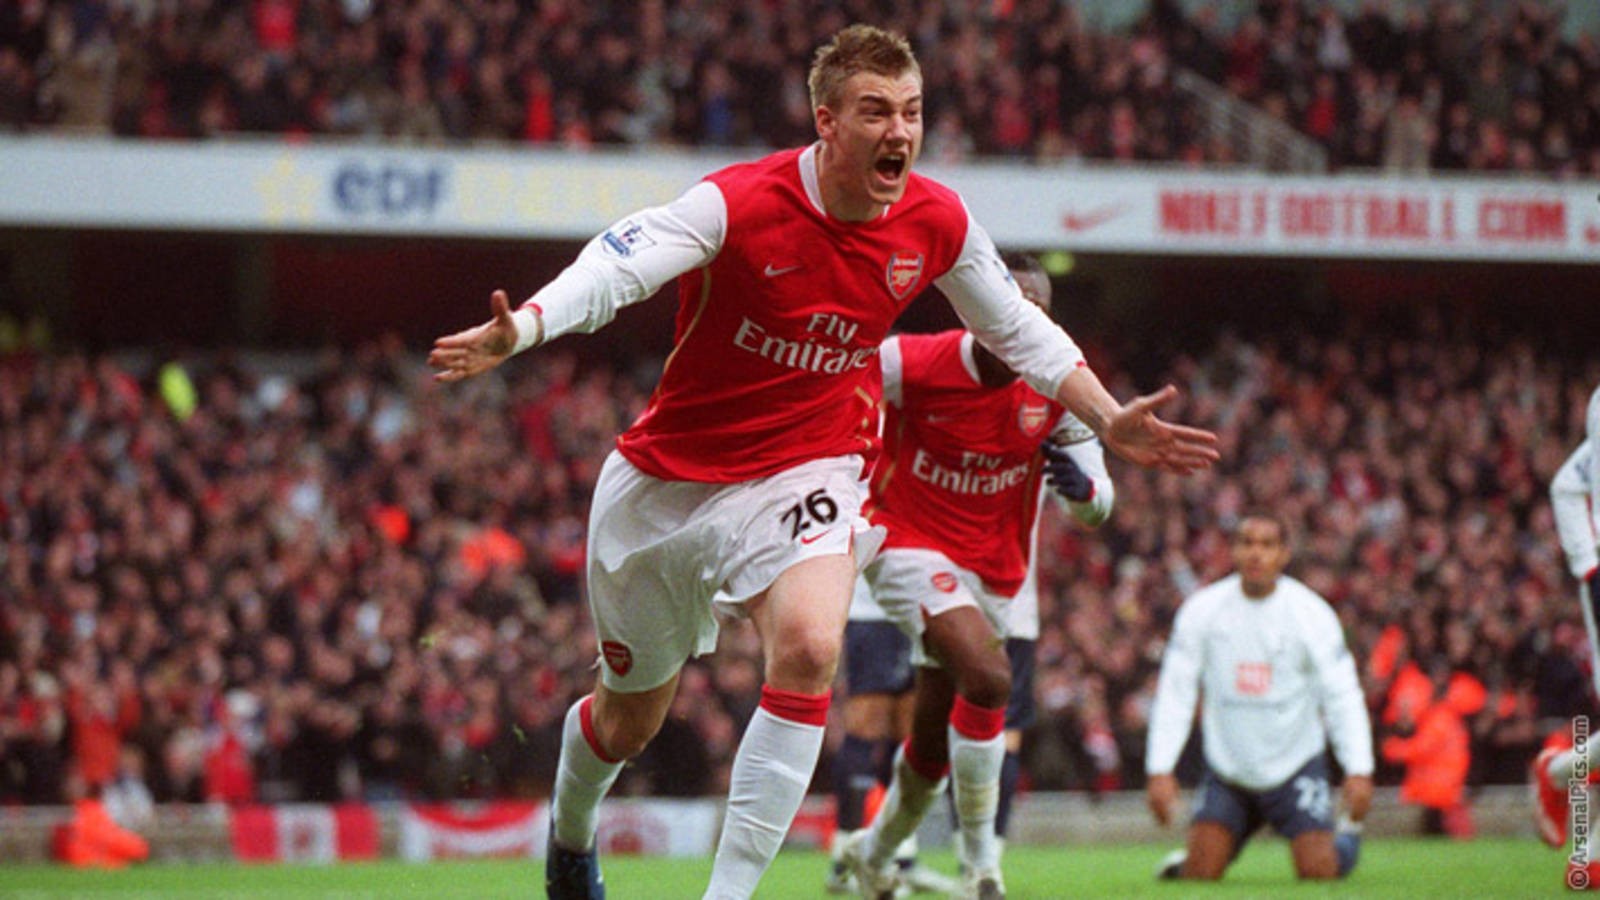 
Nicklas Bendtner từng là tiền đạo trẻ đầy hứa hẹn của Arsenal.
